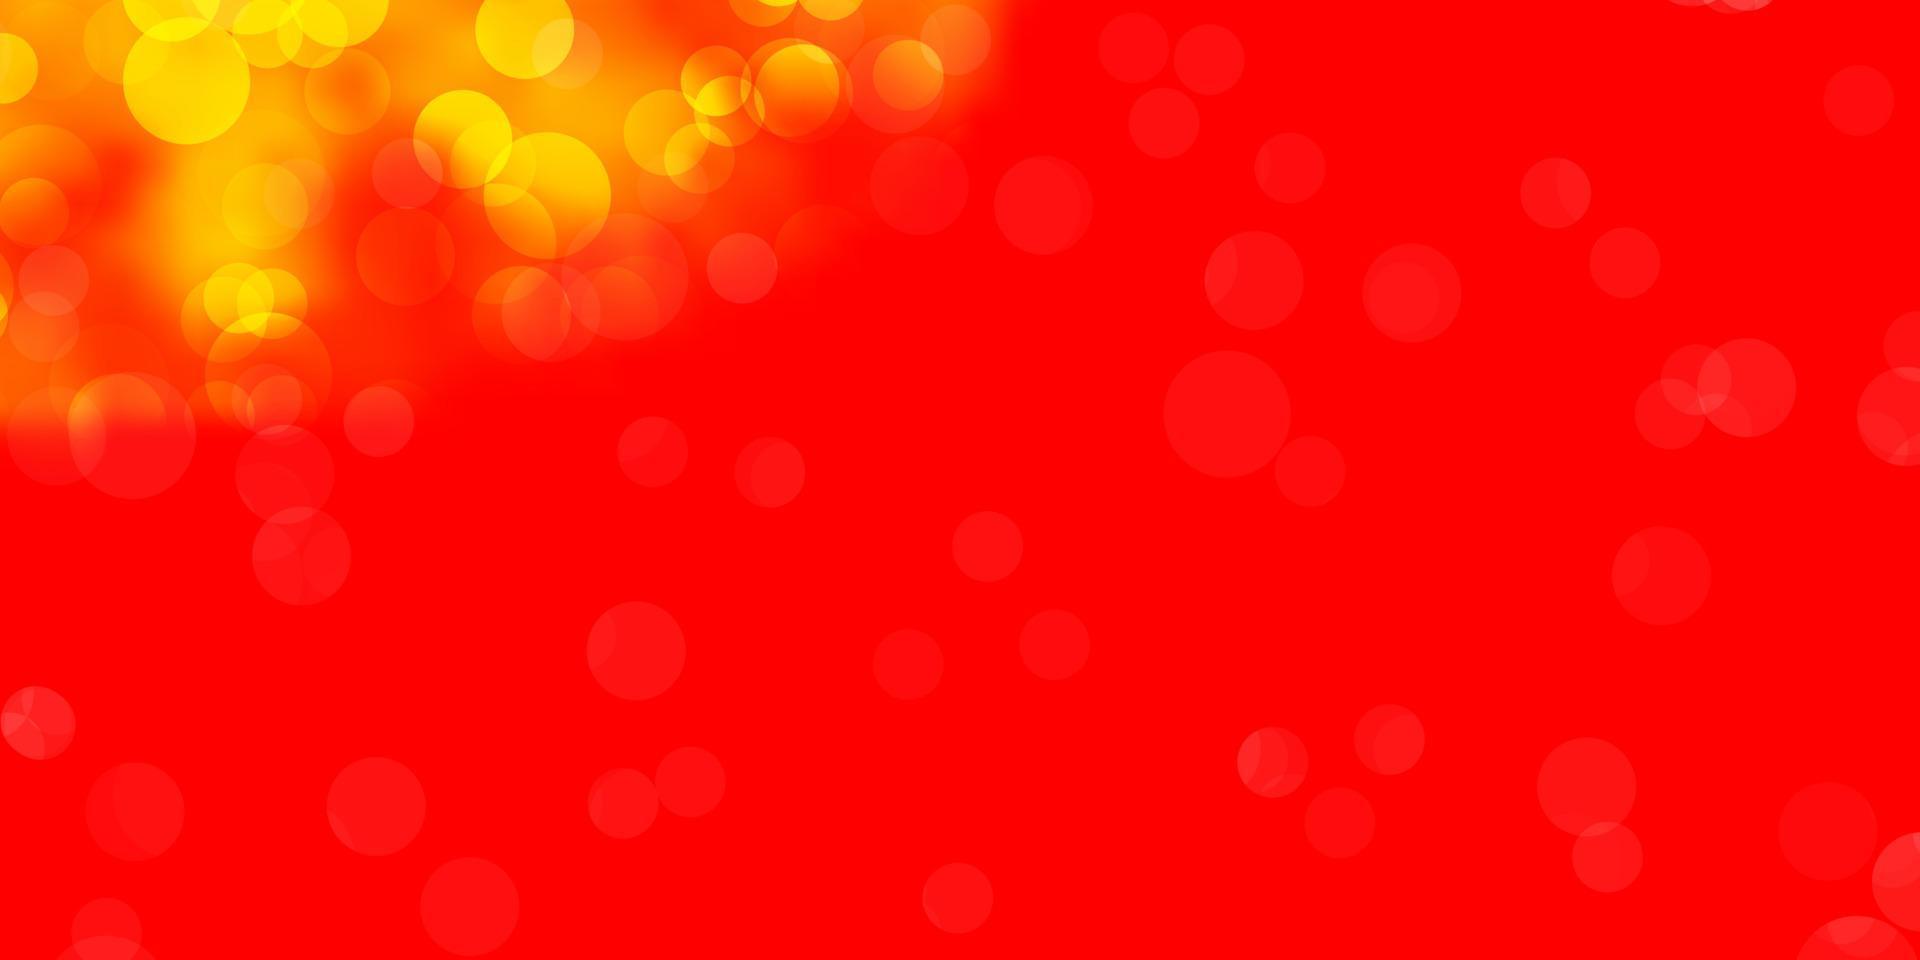 fundo vector vermelho e amarelo claro com bolhas.